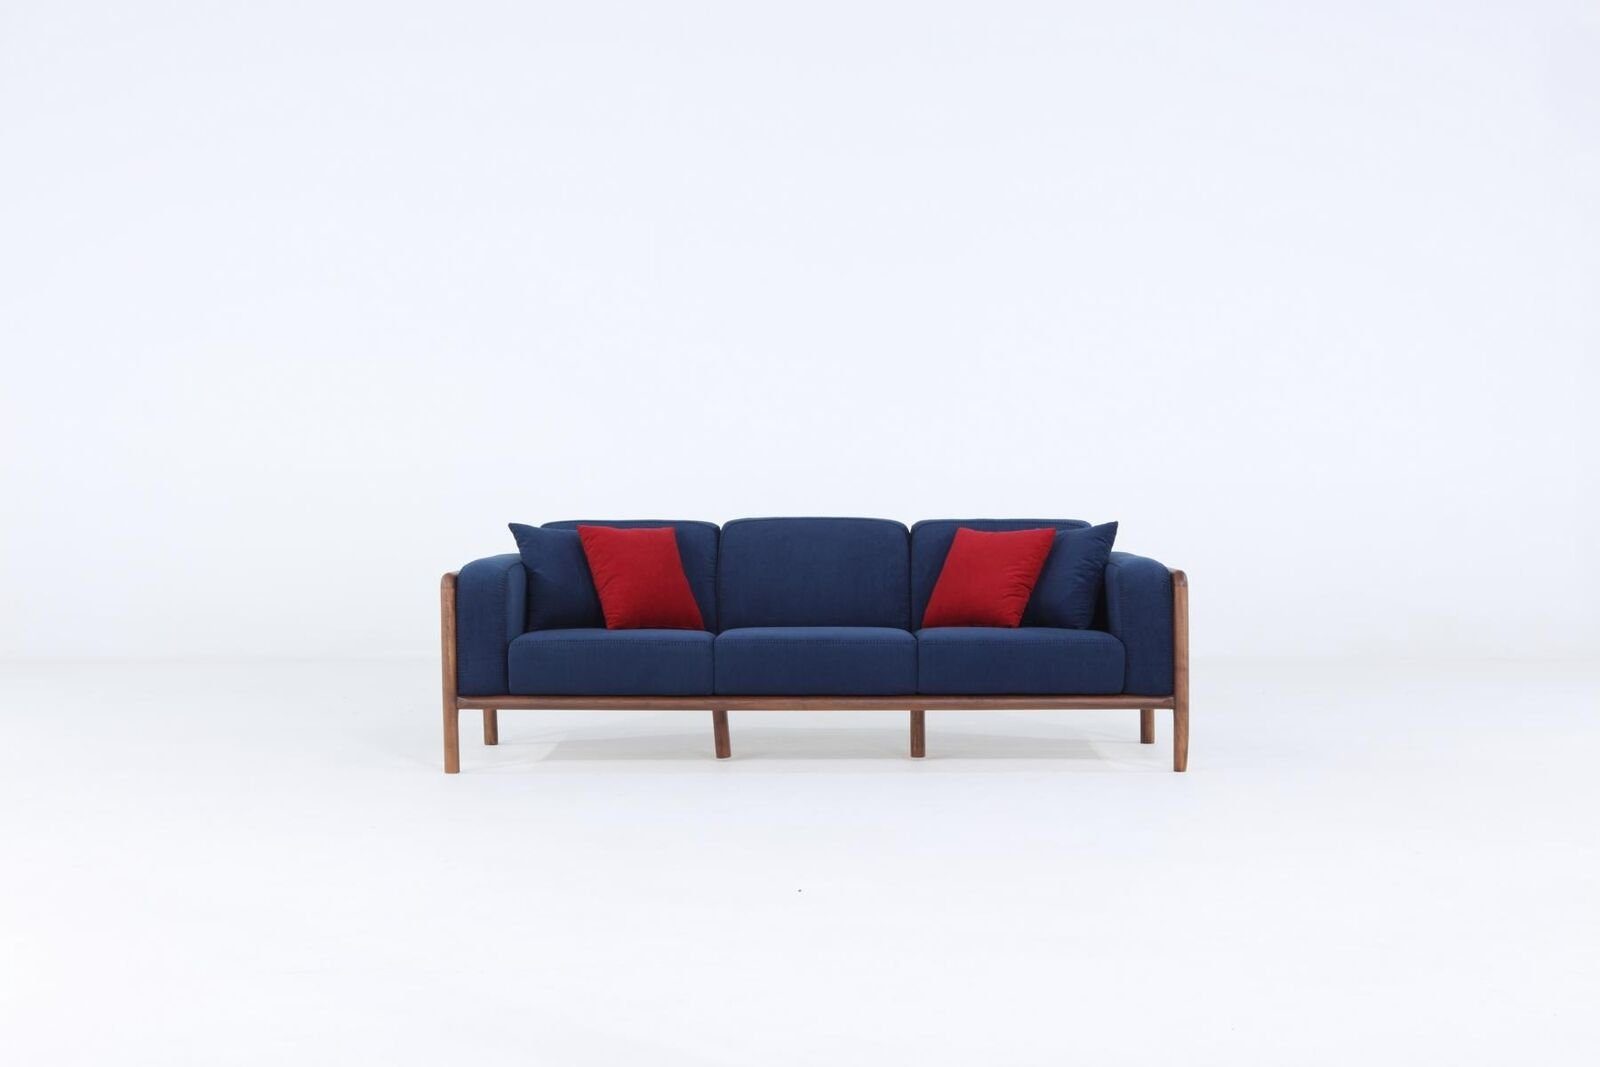 JVmoebel 3-Sitzer Sofa 3 Sitzer Dreisitzer Modern Stoff Blau Sofas Design Wohnzimmer Neu, 1 Teile, Made in Europa